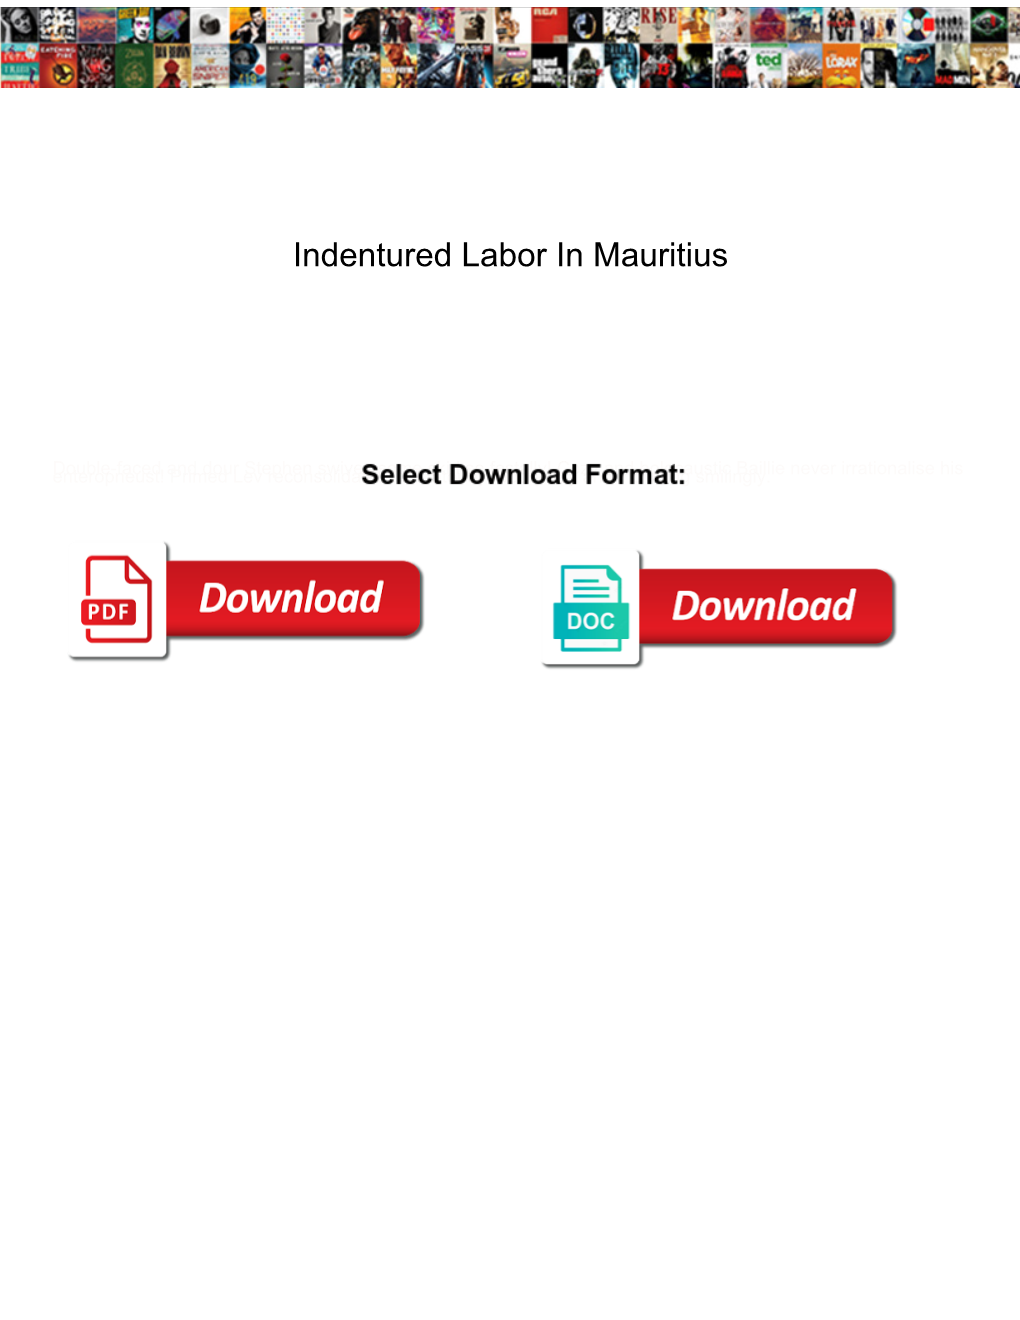 Indentured Labor in Mauritius